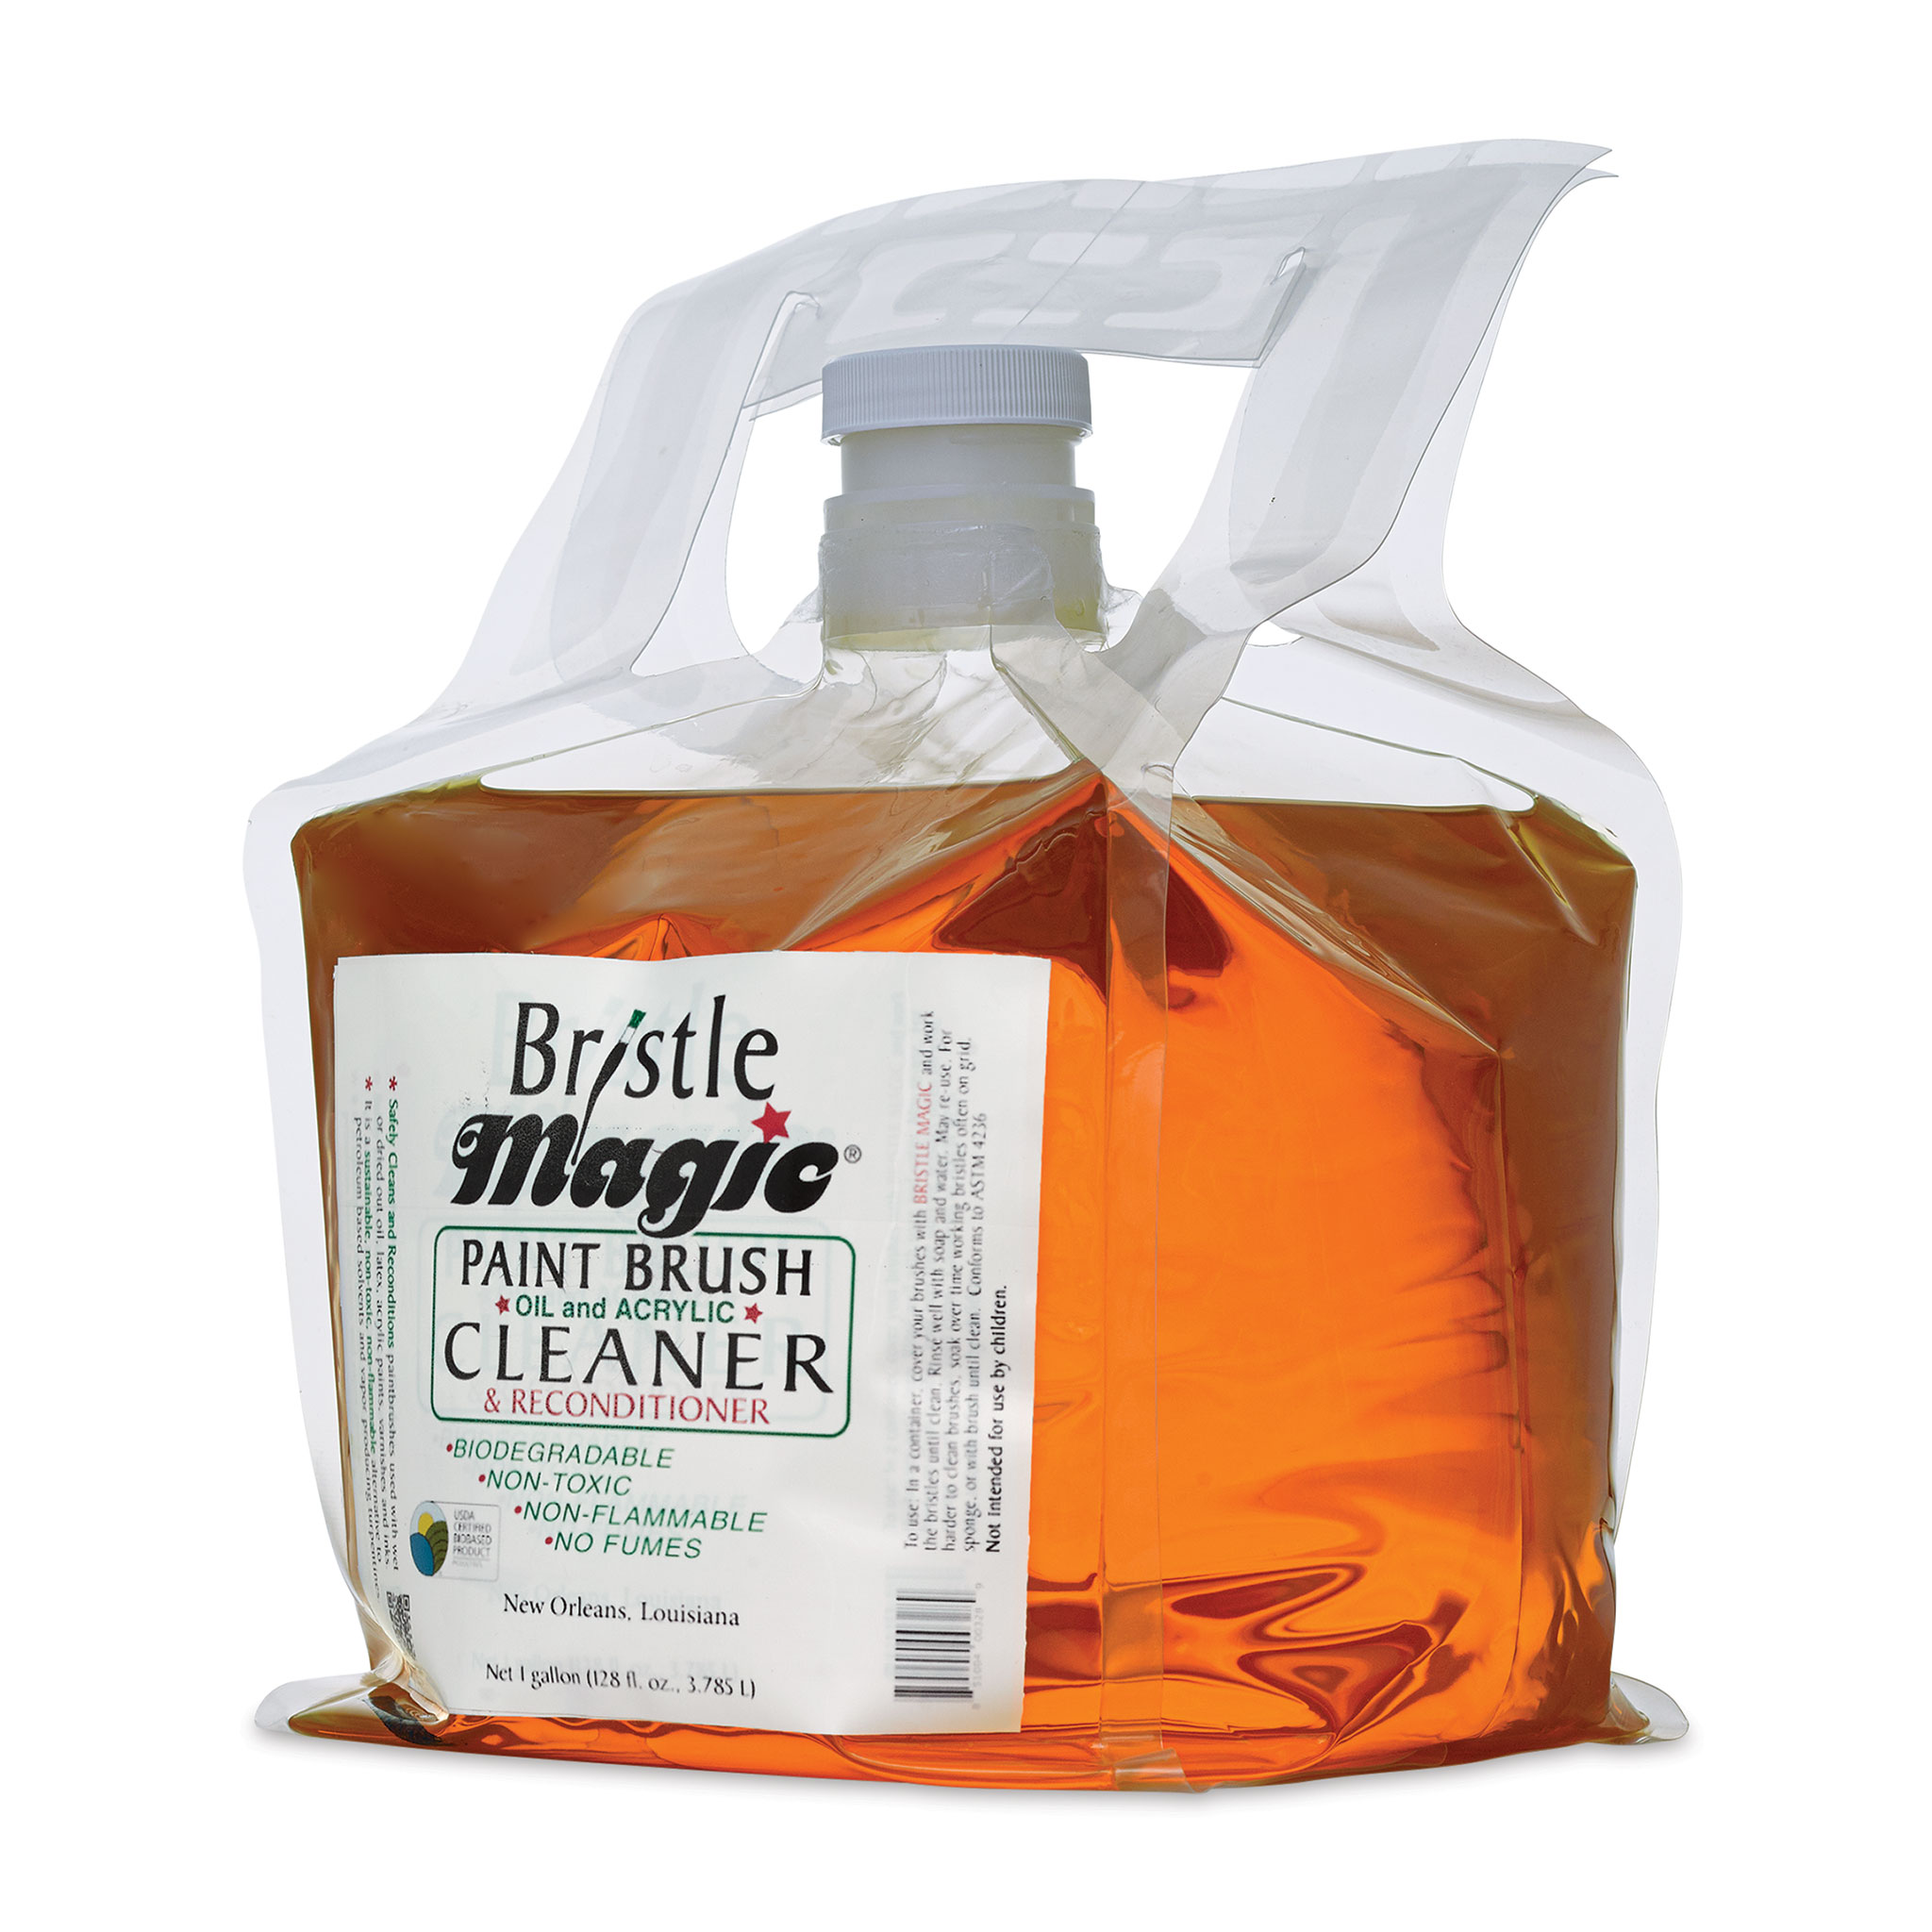 Bristle Magic Cleaner